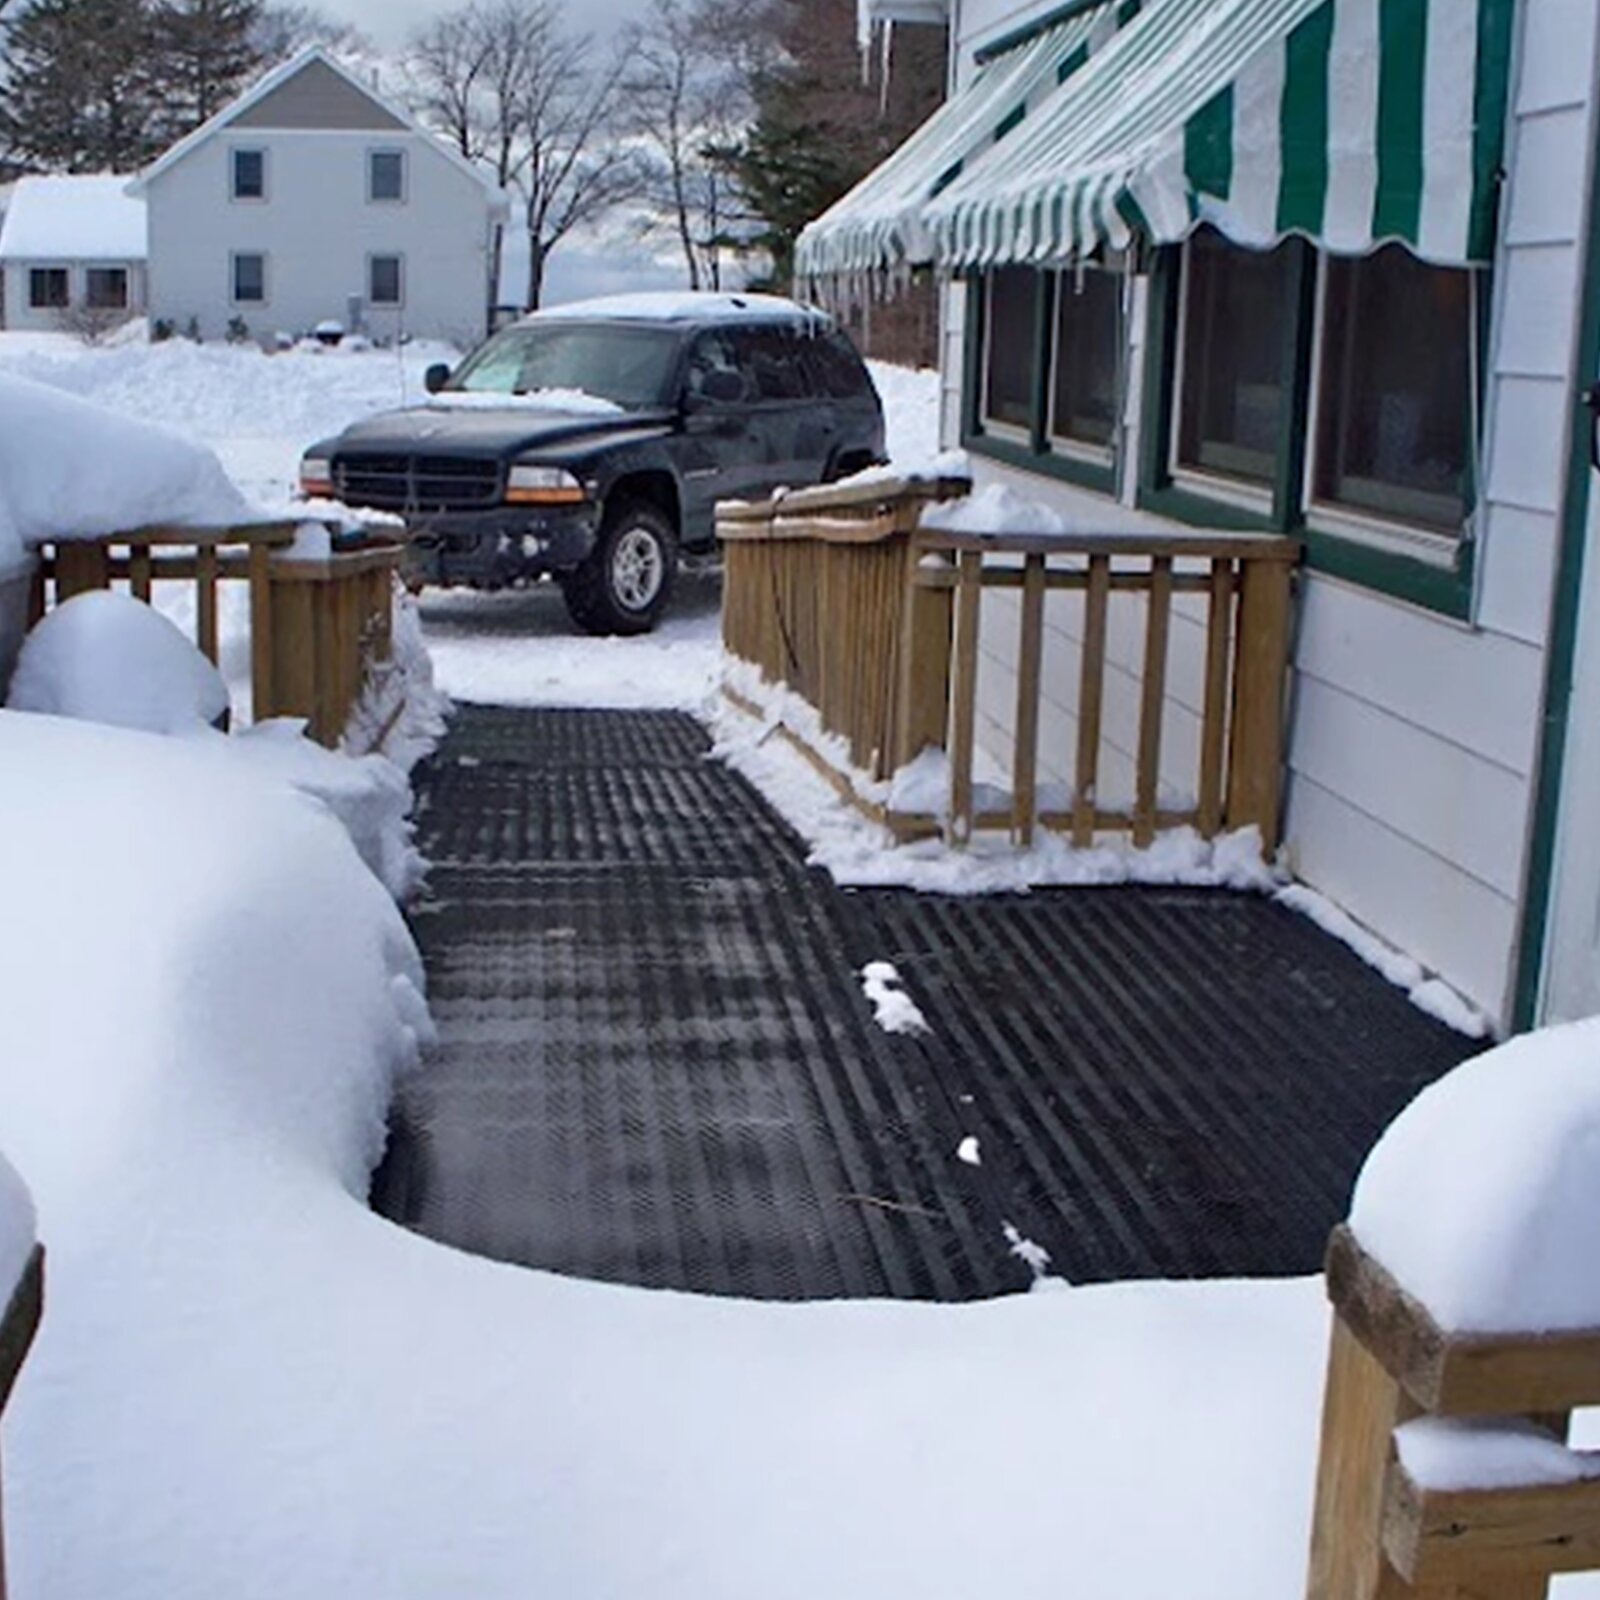 Eis- und Schneefreie Eingangsbereiche vermeiden Unfälle